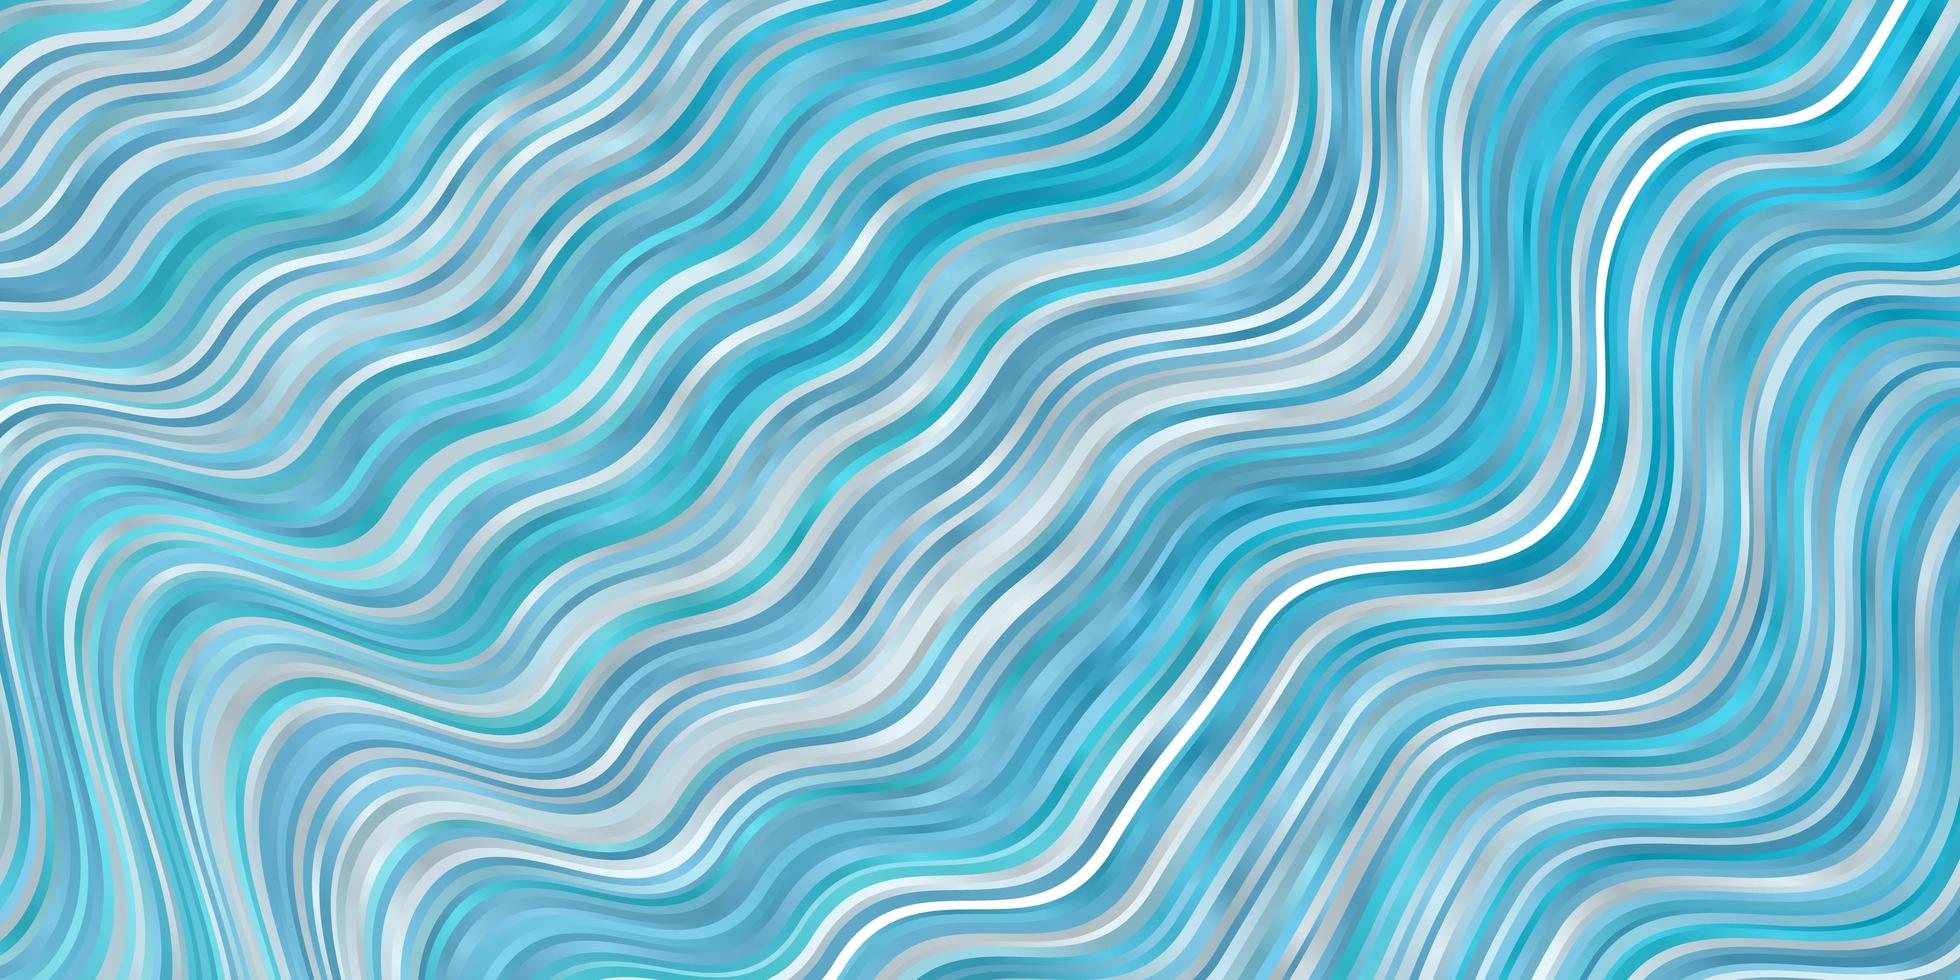 texture vettoriale blu chiaro con linee ironiche